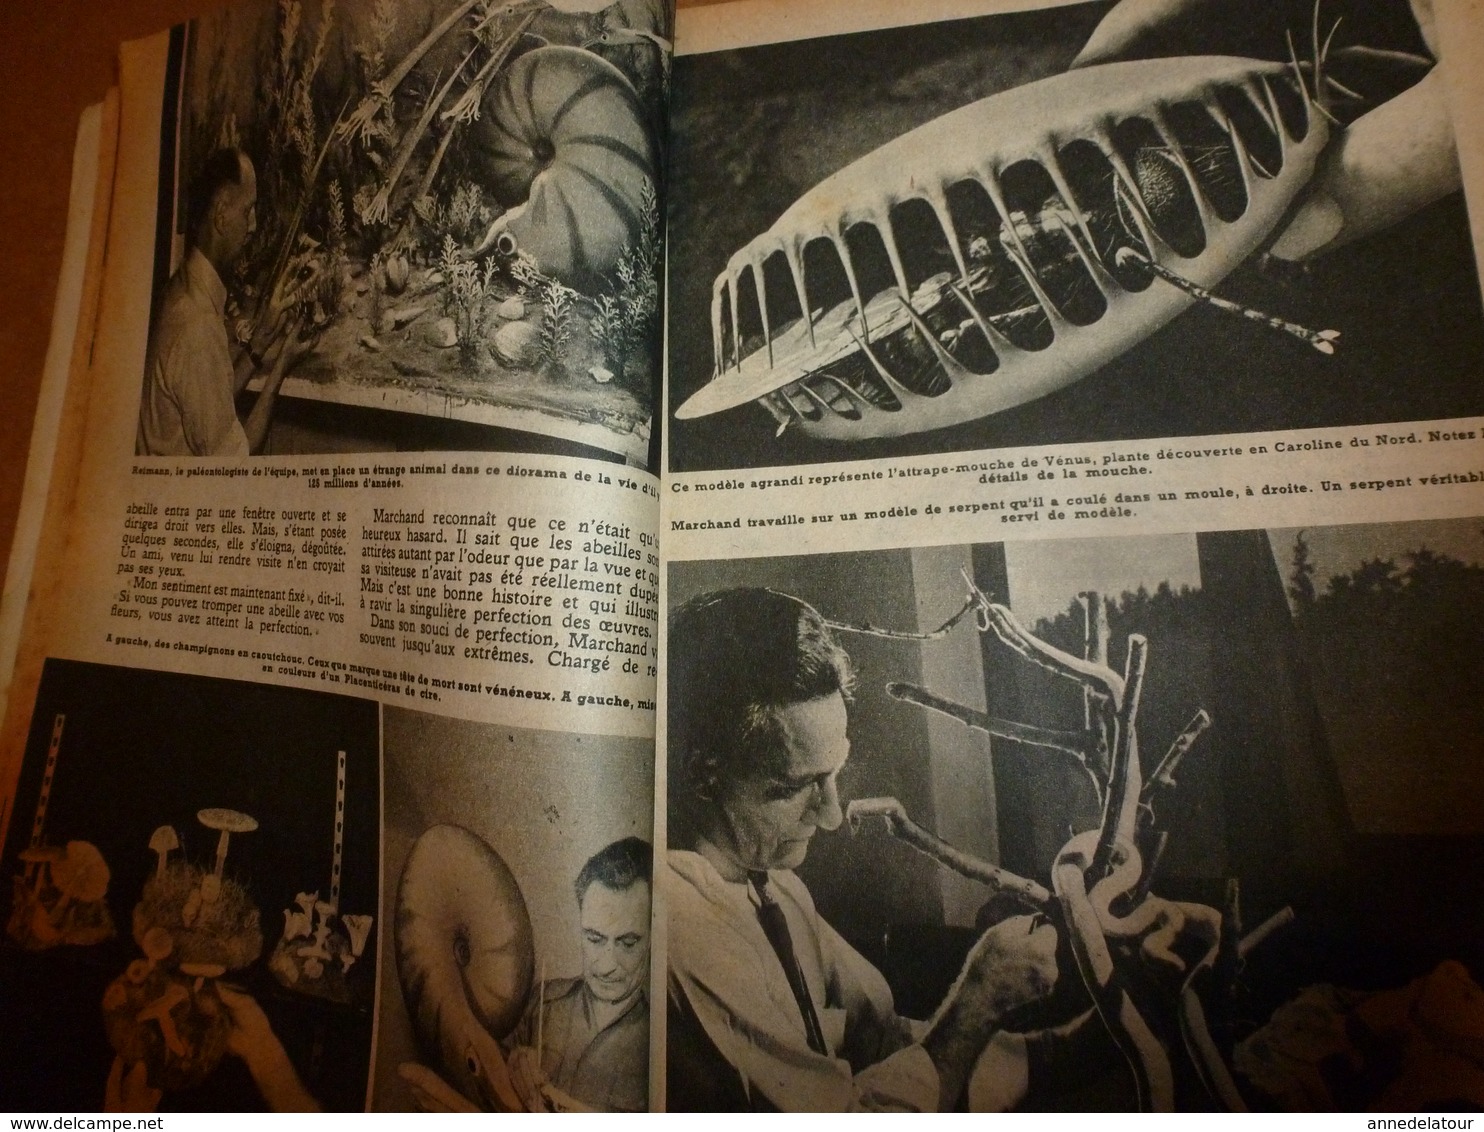 1951 MÉCANIQUE POPULAIRE: Je construis ma maison en contre-plaqué (5e part);Auto a pédales;Solution bateau a voile; etc